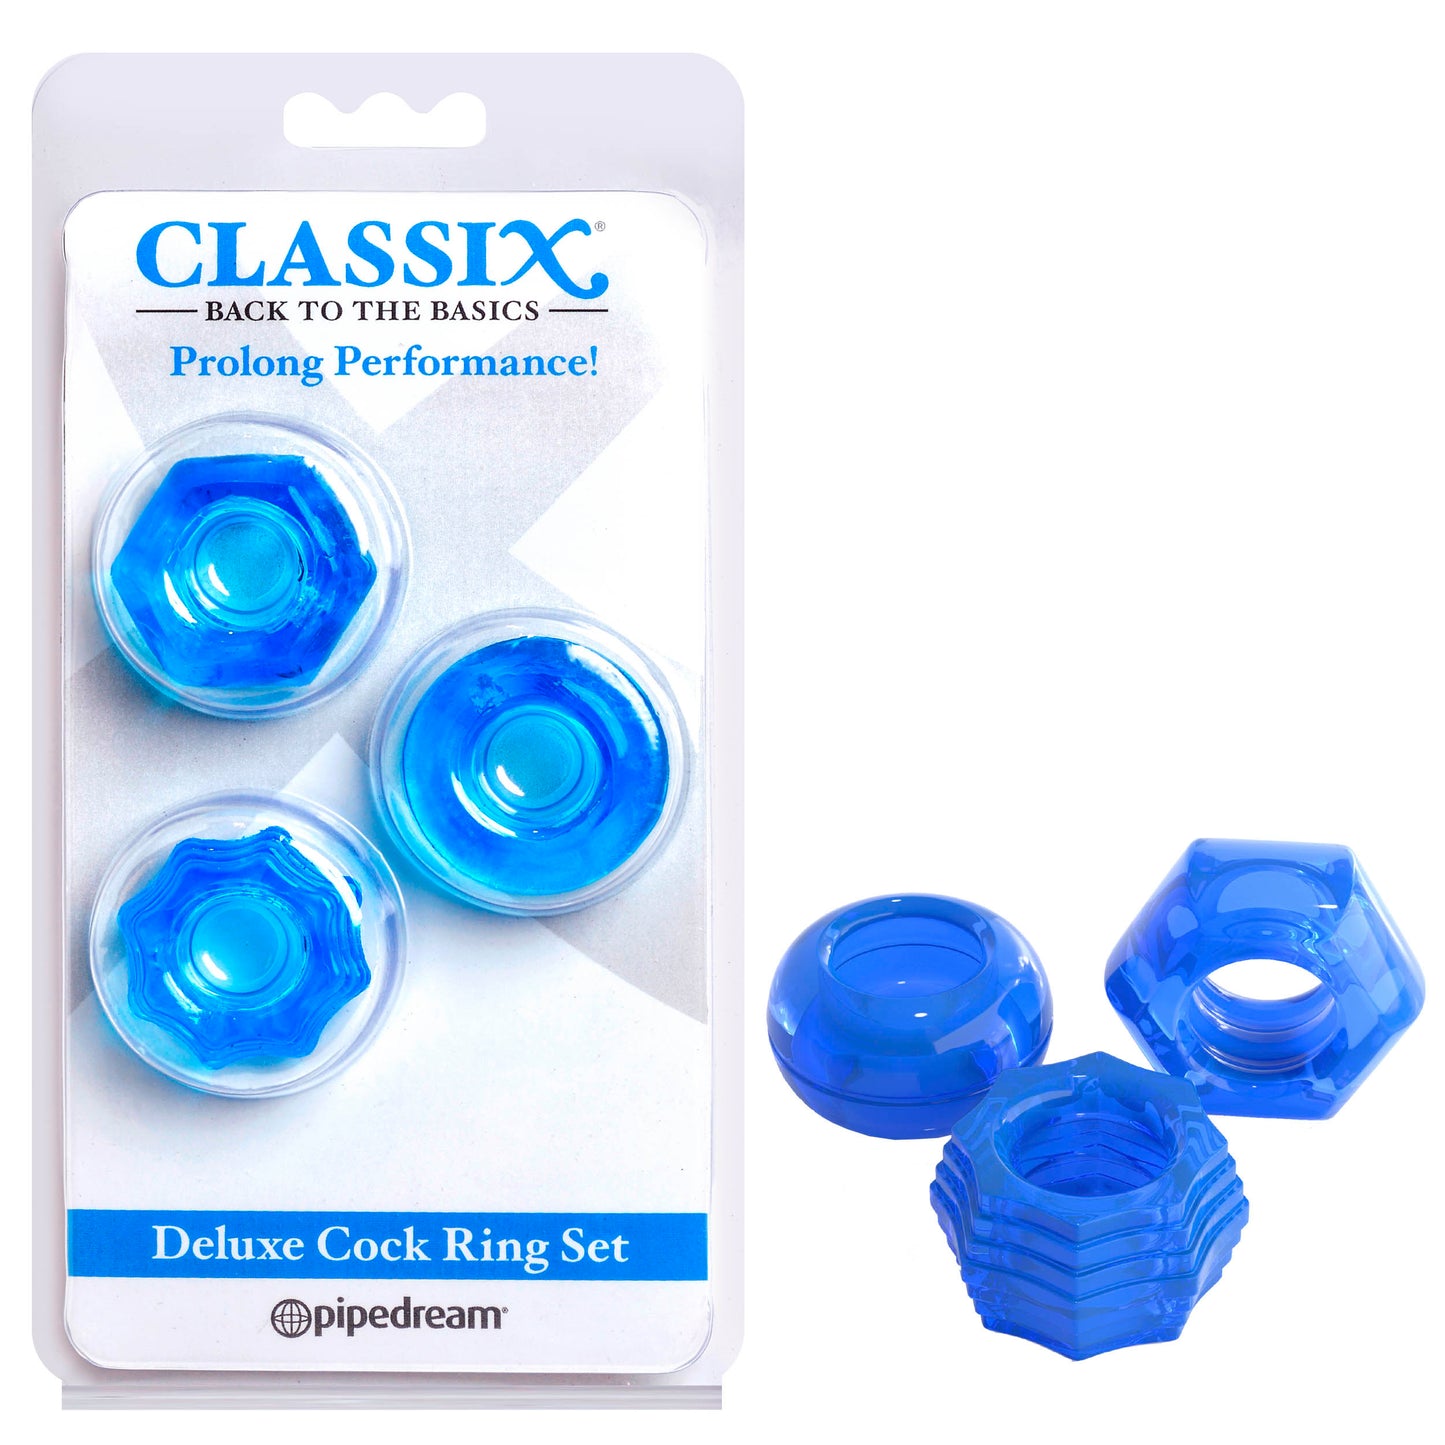 Classix Deluxe Cock Ring Set